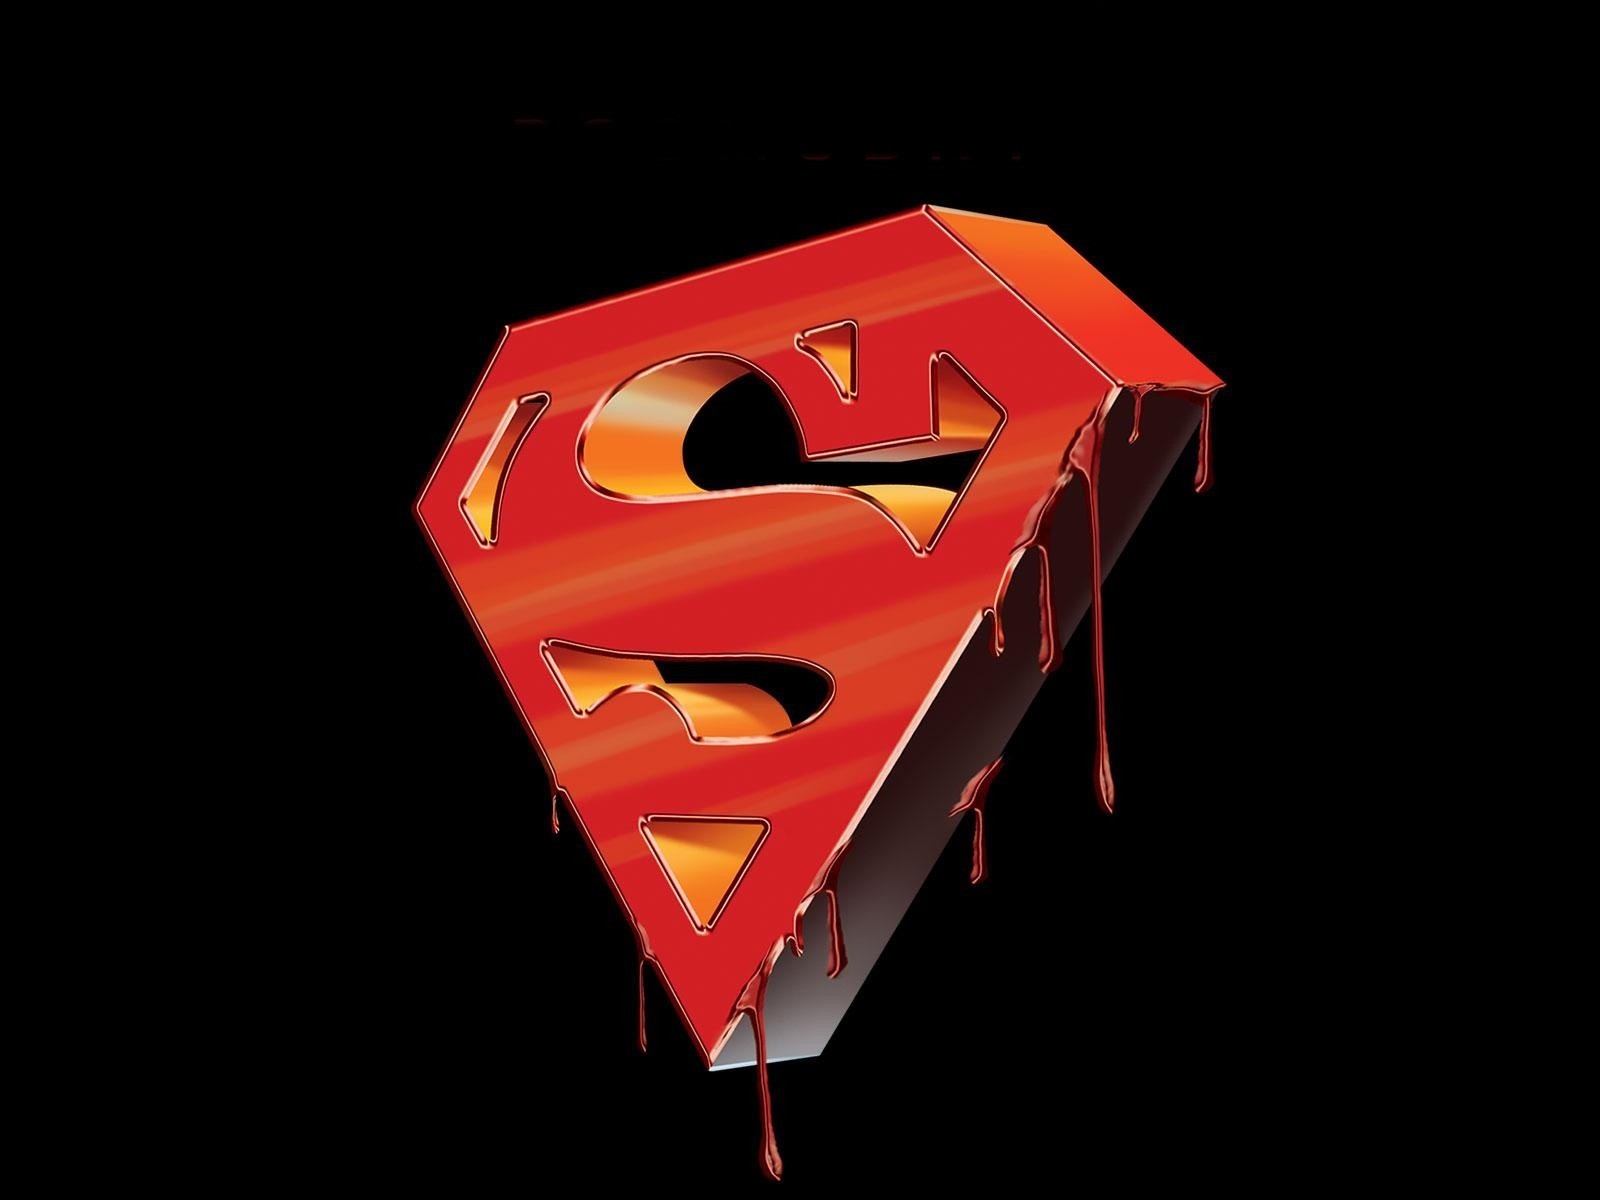 Популярные заставки и фоны Супермен (Superman) на компьютер